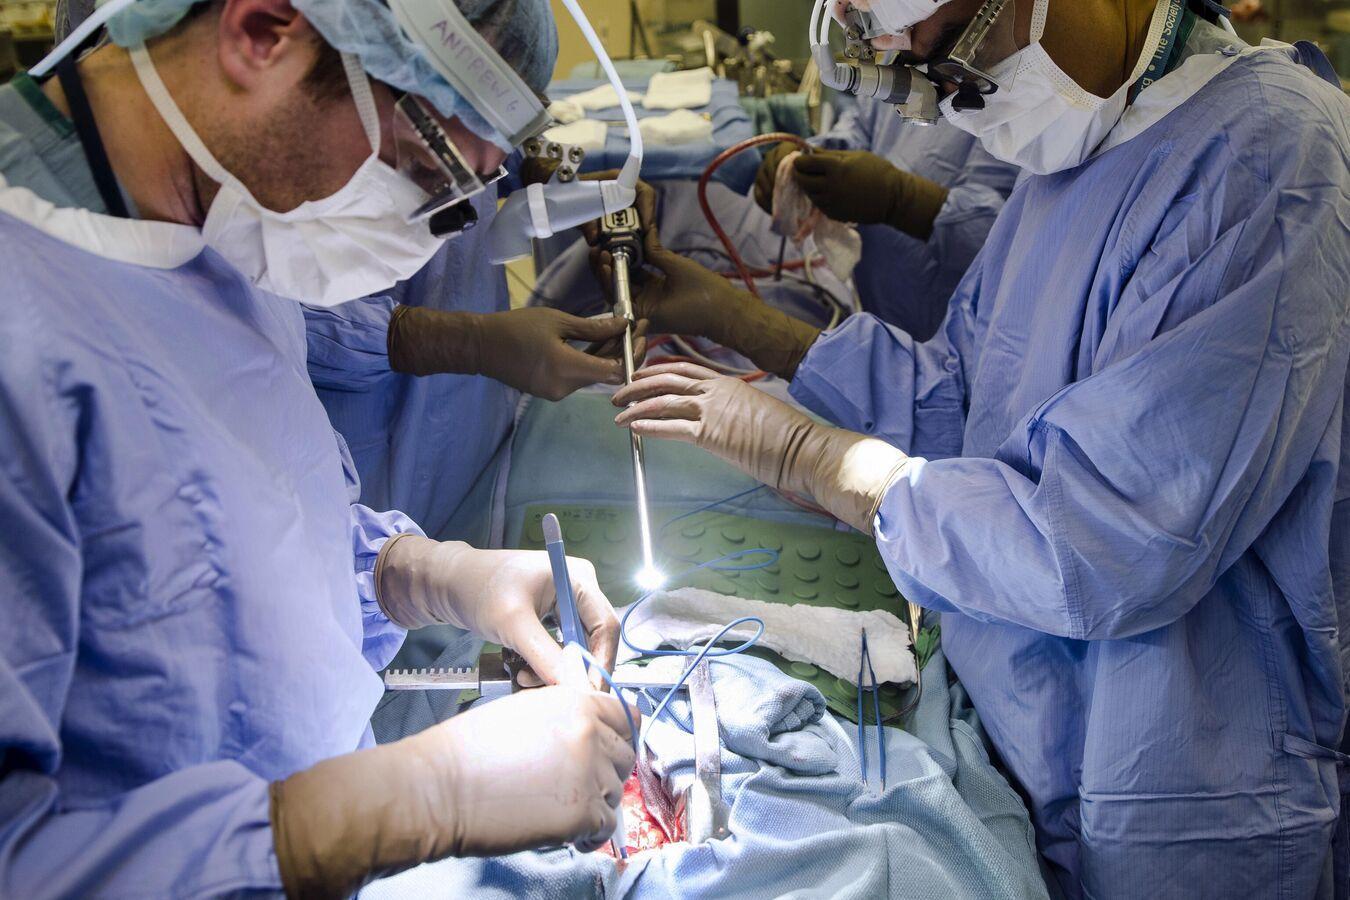 فريق طبي تونسي ينجح في إجراء أول عملية تسريح لجلطة دماغية بتقنية "ترومبوليز"